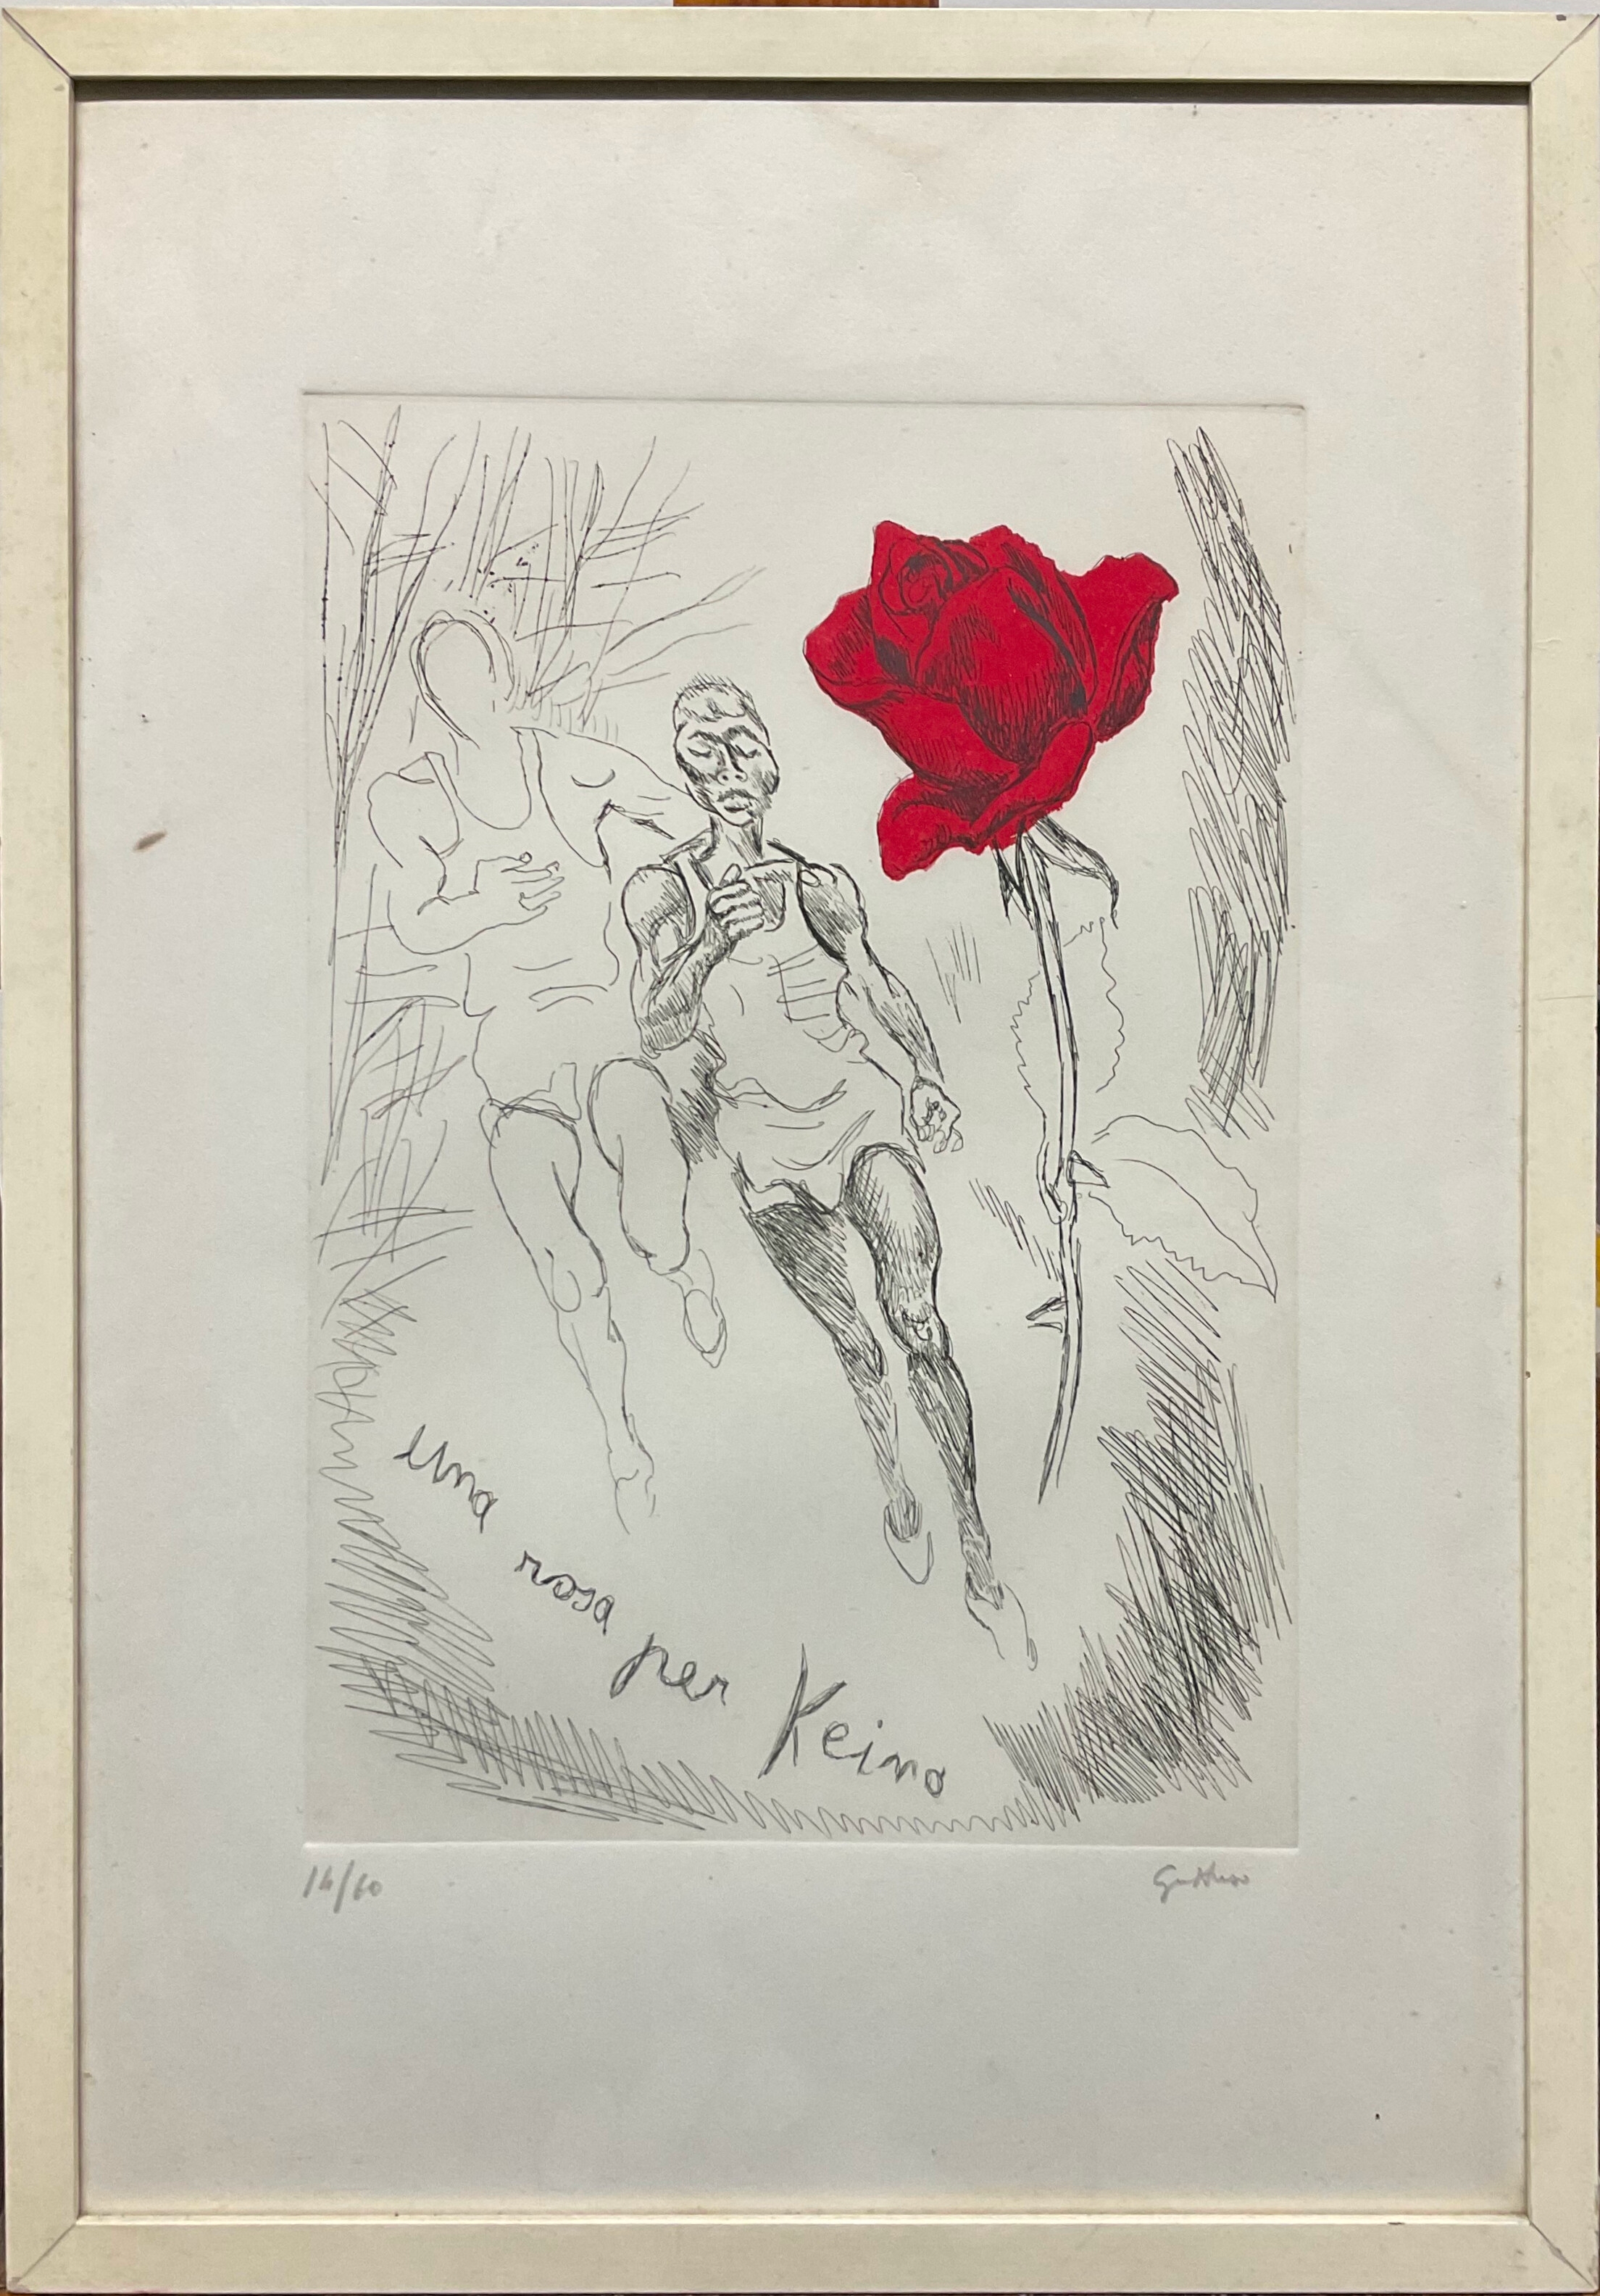 Una rosa per Keino - Renato Guttuso